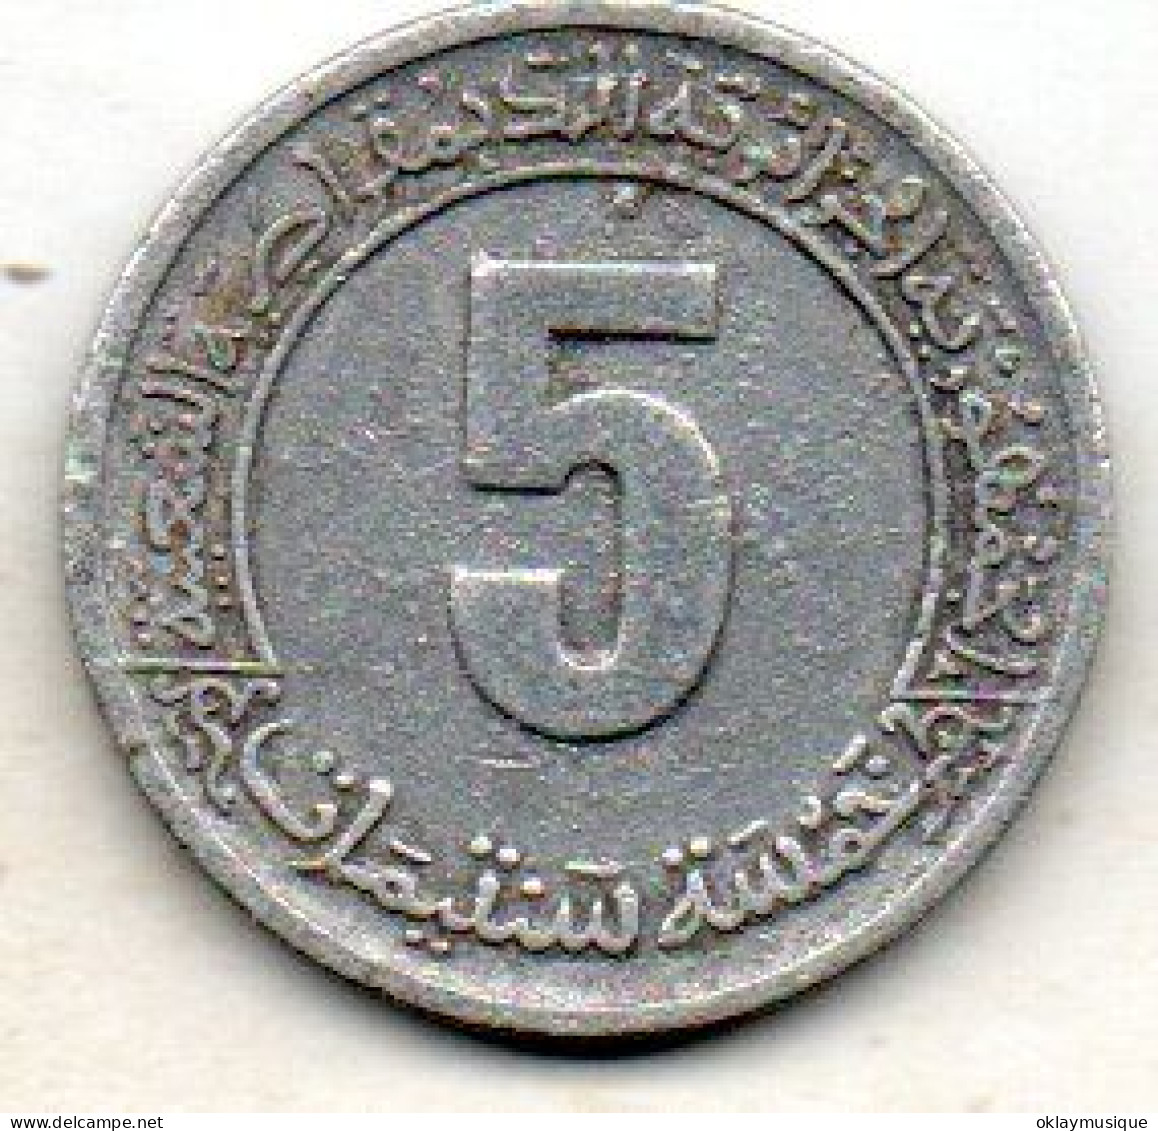 5 Centimes 1974 - Algerien